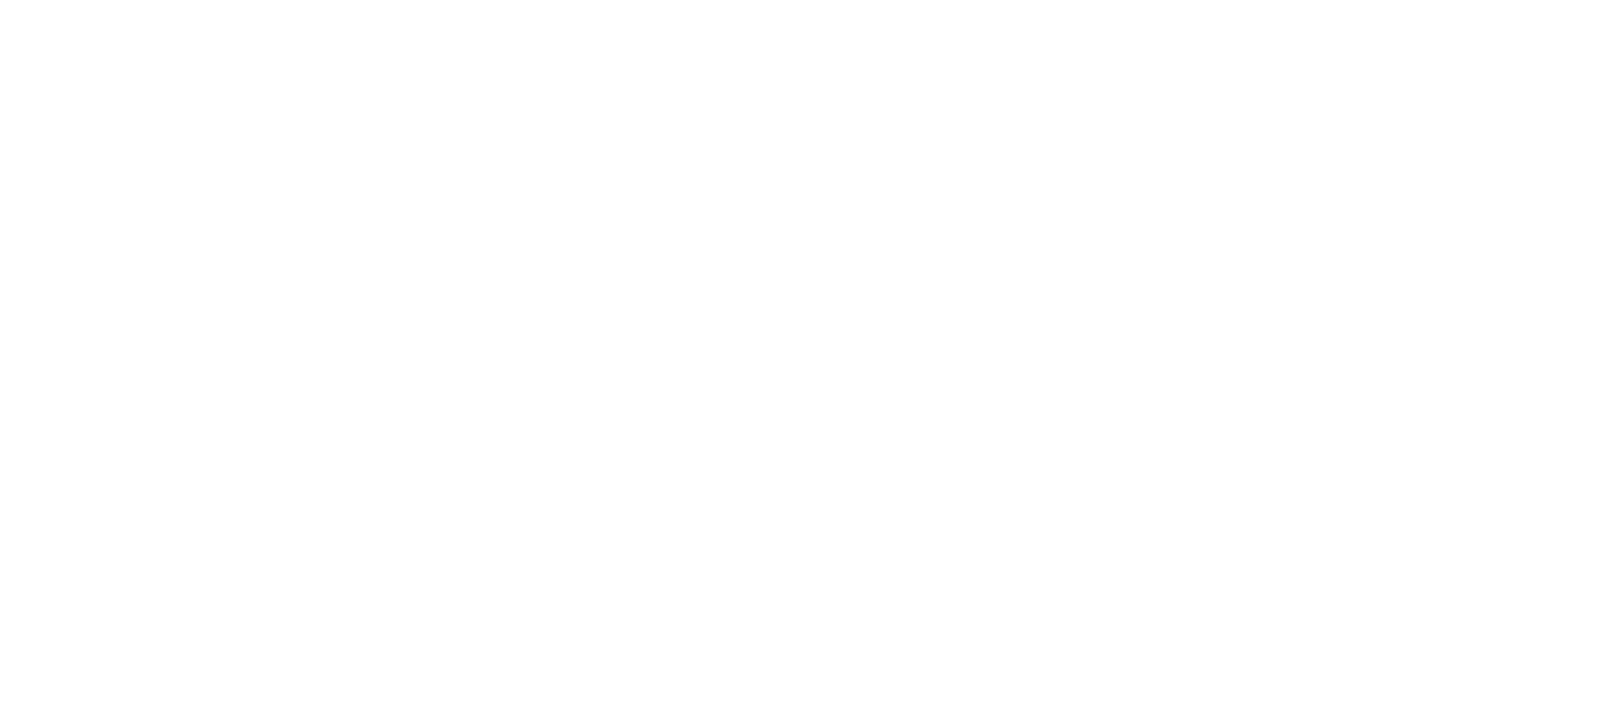 Redolent Atelier Logo - White Primary